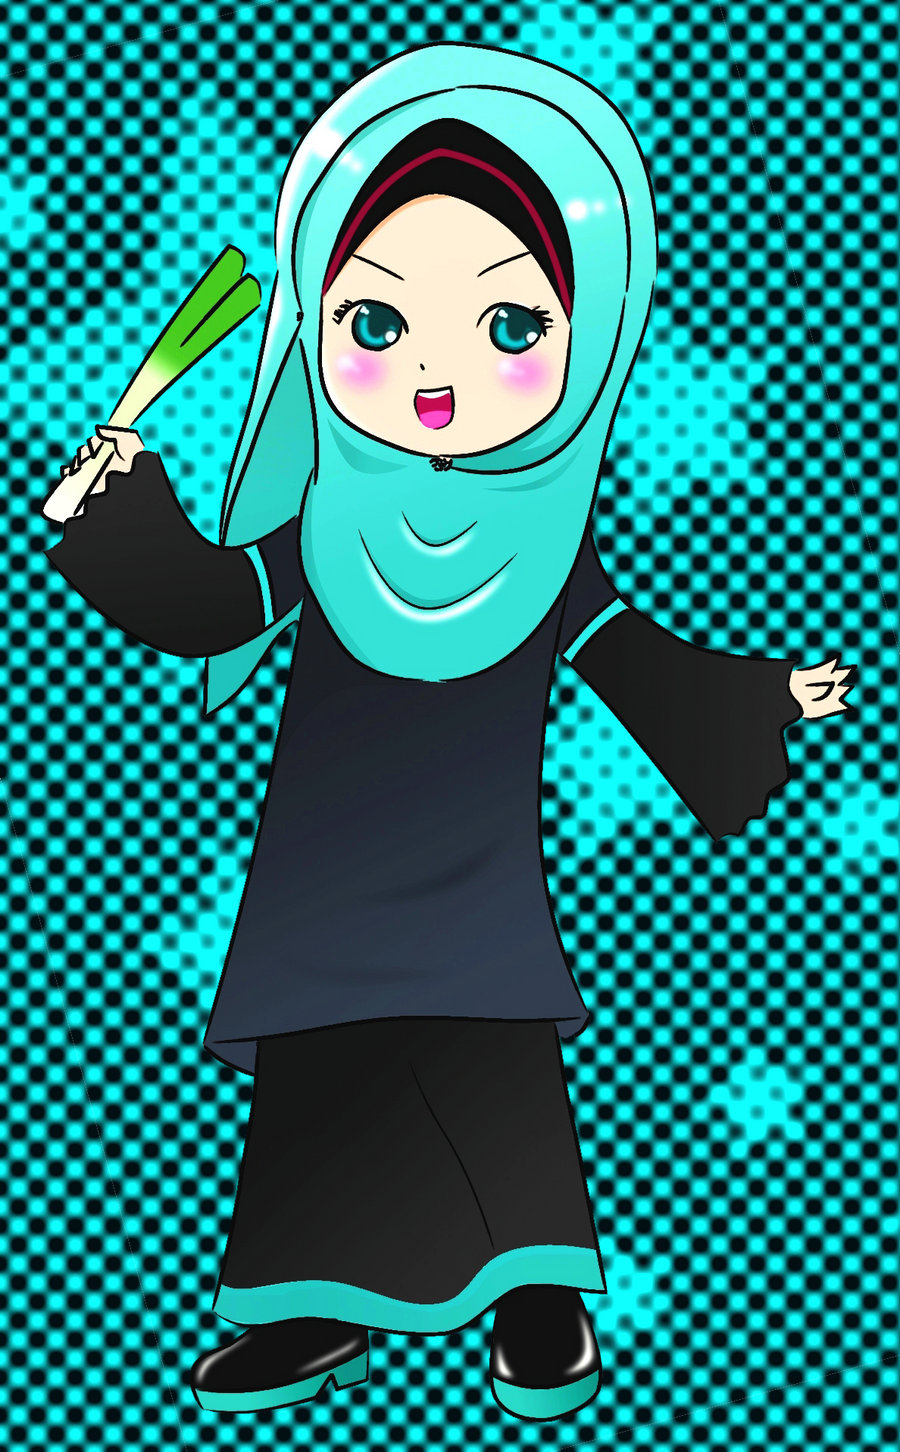 miku in hijab + baju kurung by nyanbila49 on DeviantArt